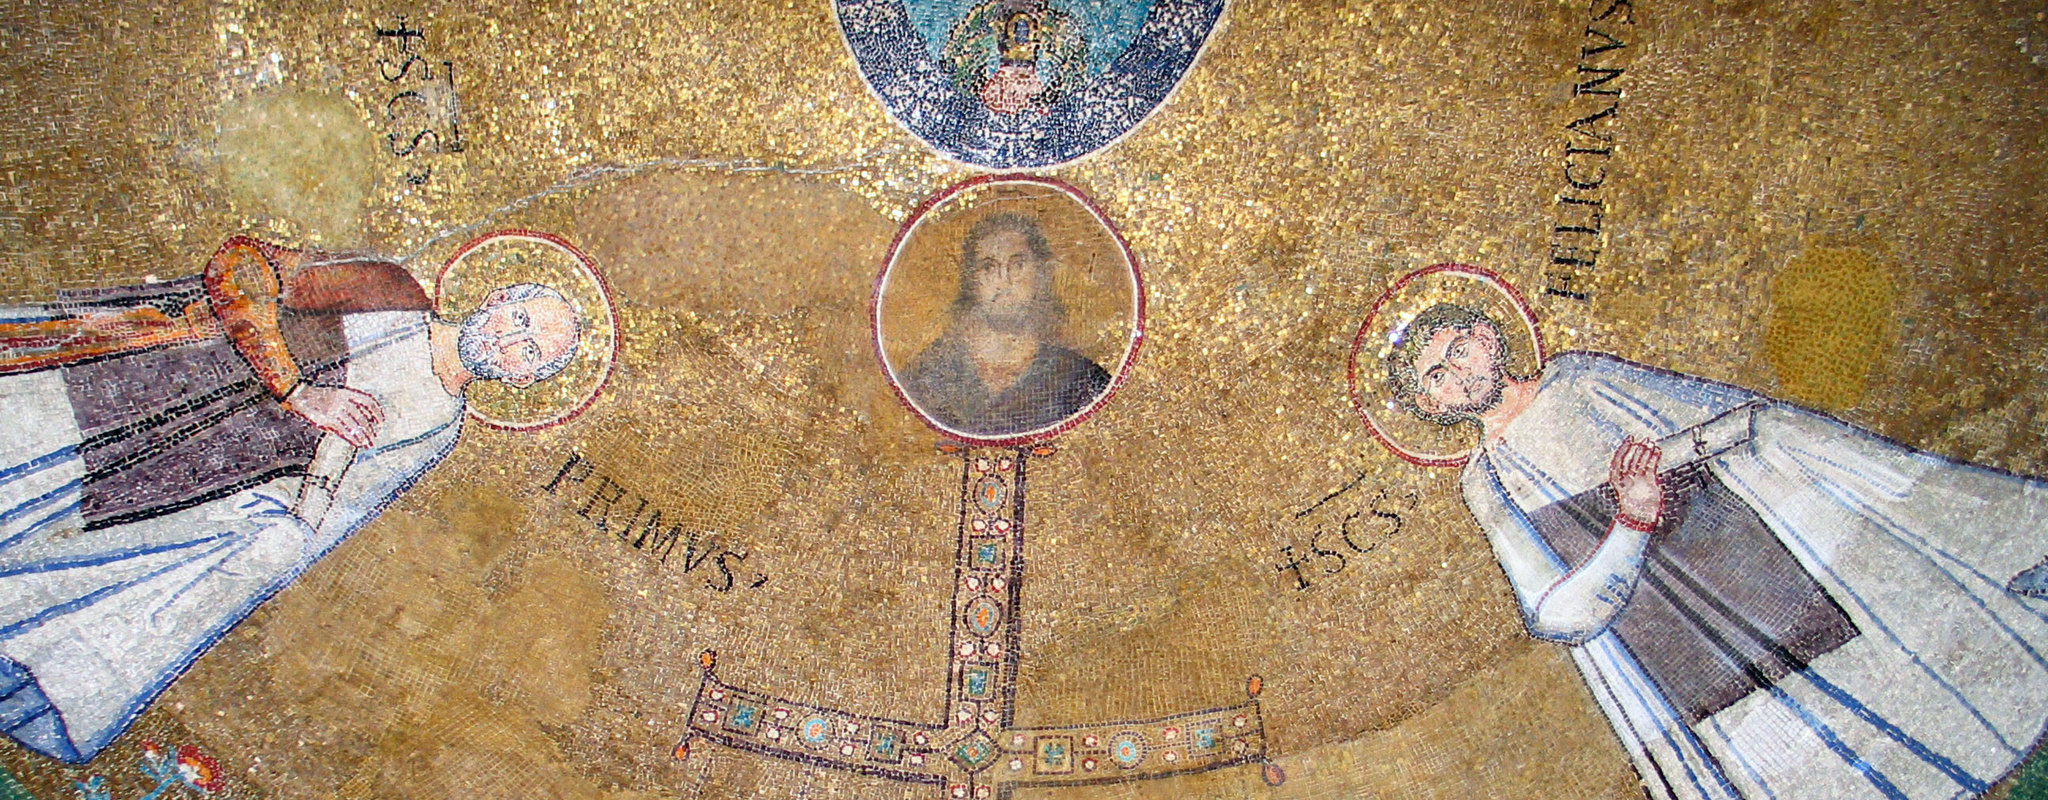 Онлайн-лекция  «Образы святых в римских мозаиках VII века»